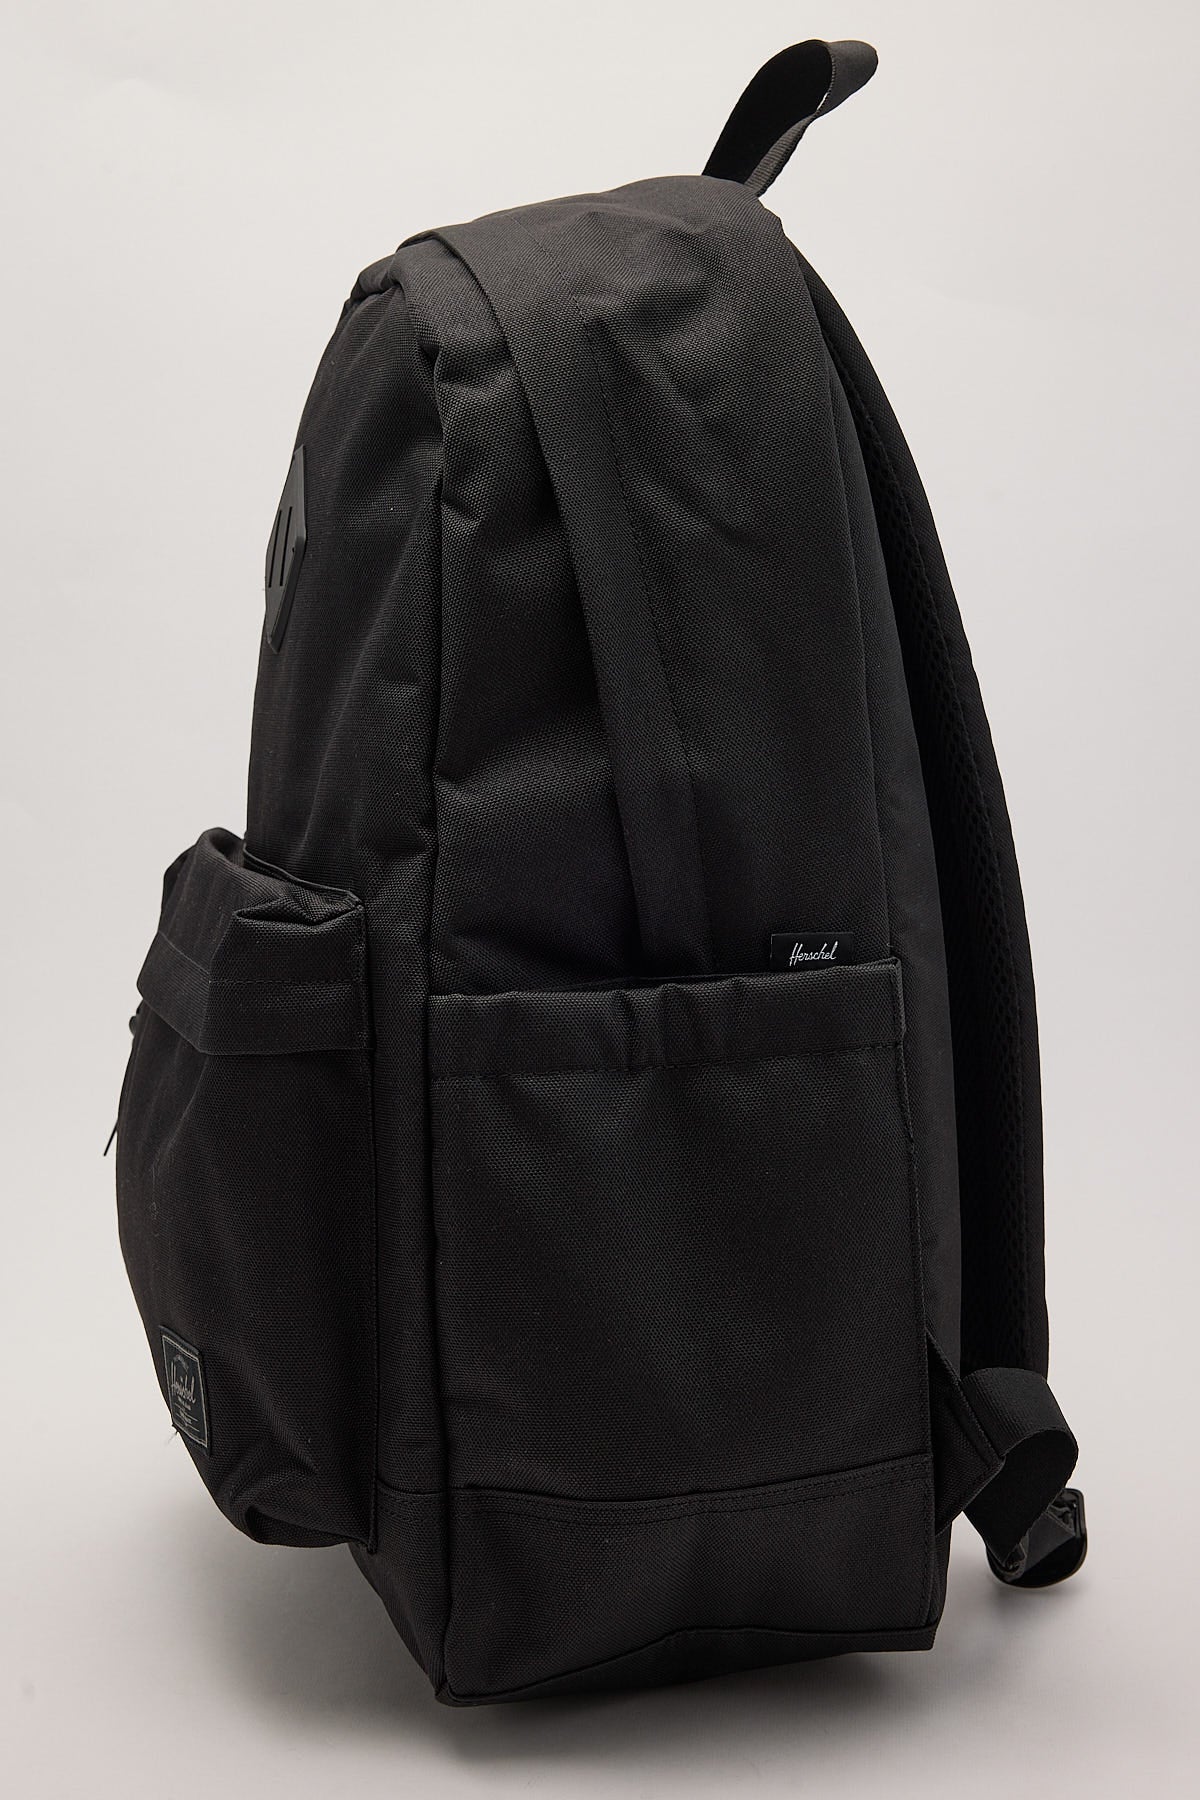 Herschel Supply Co. Heritage Backpack Black Tonal